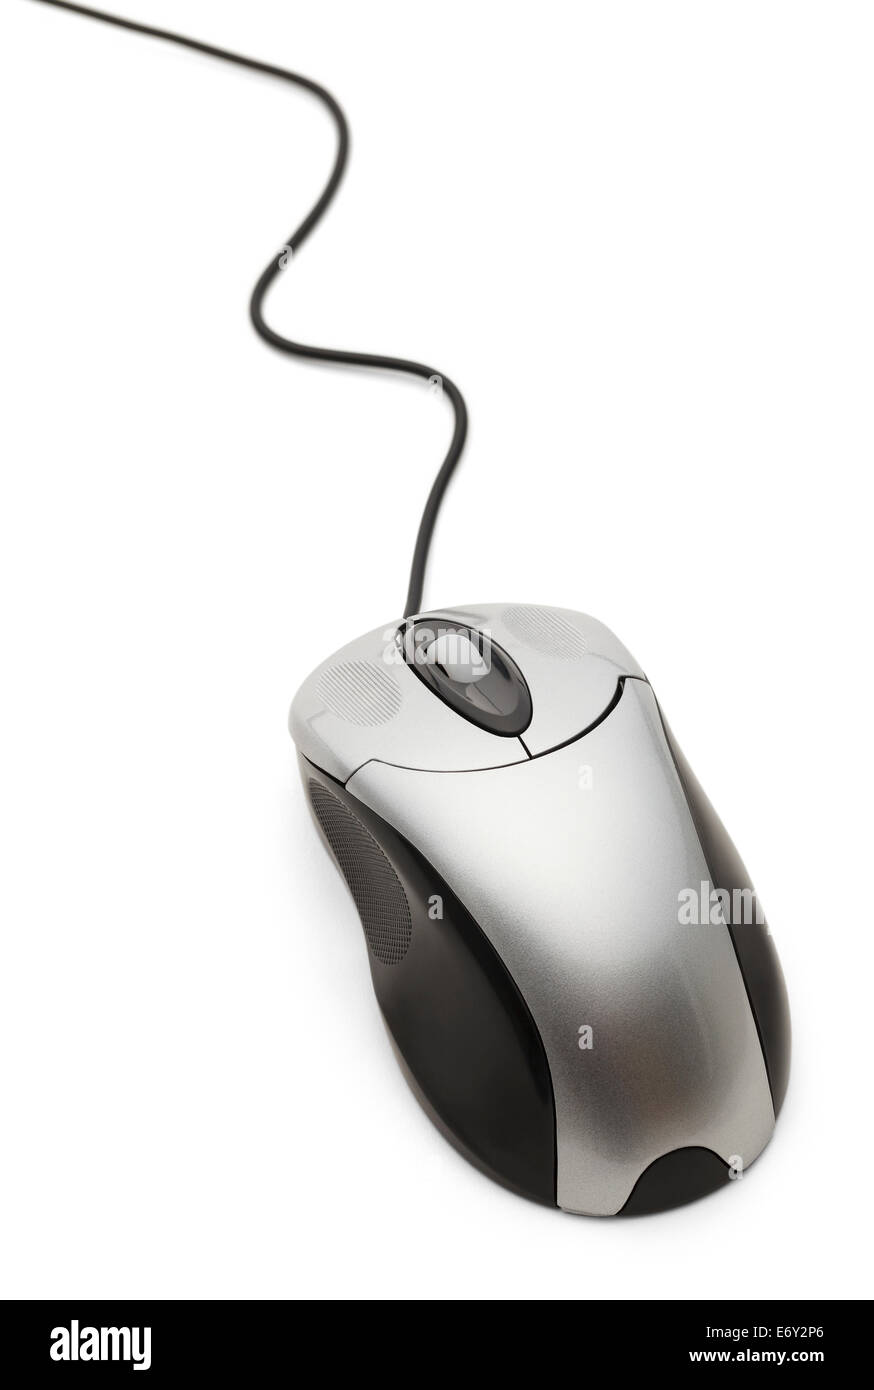 Il mouse del computer con il cavo isolato su sfondo bianco. Foto Stock